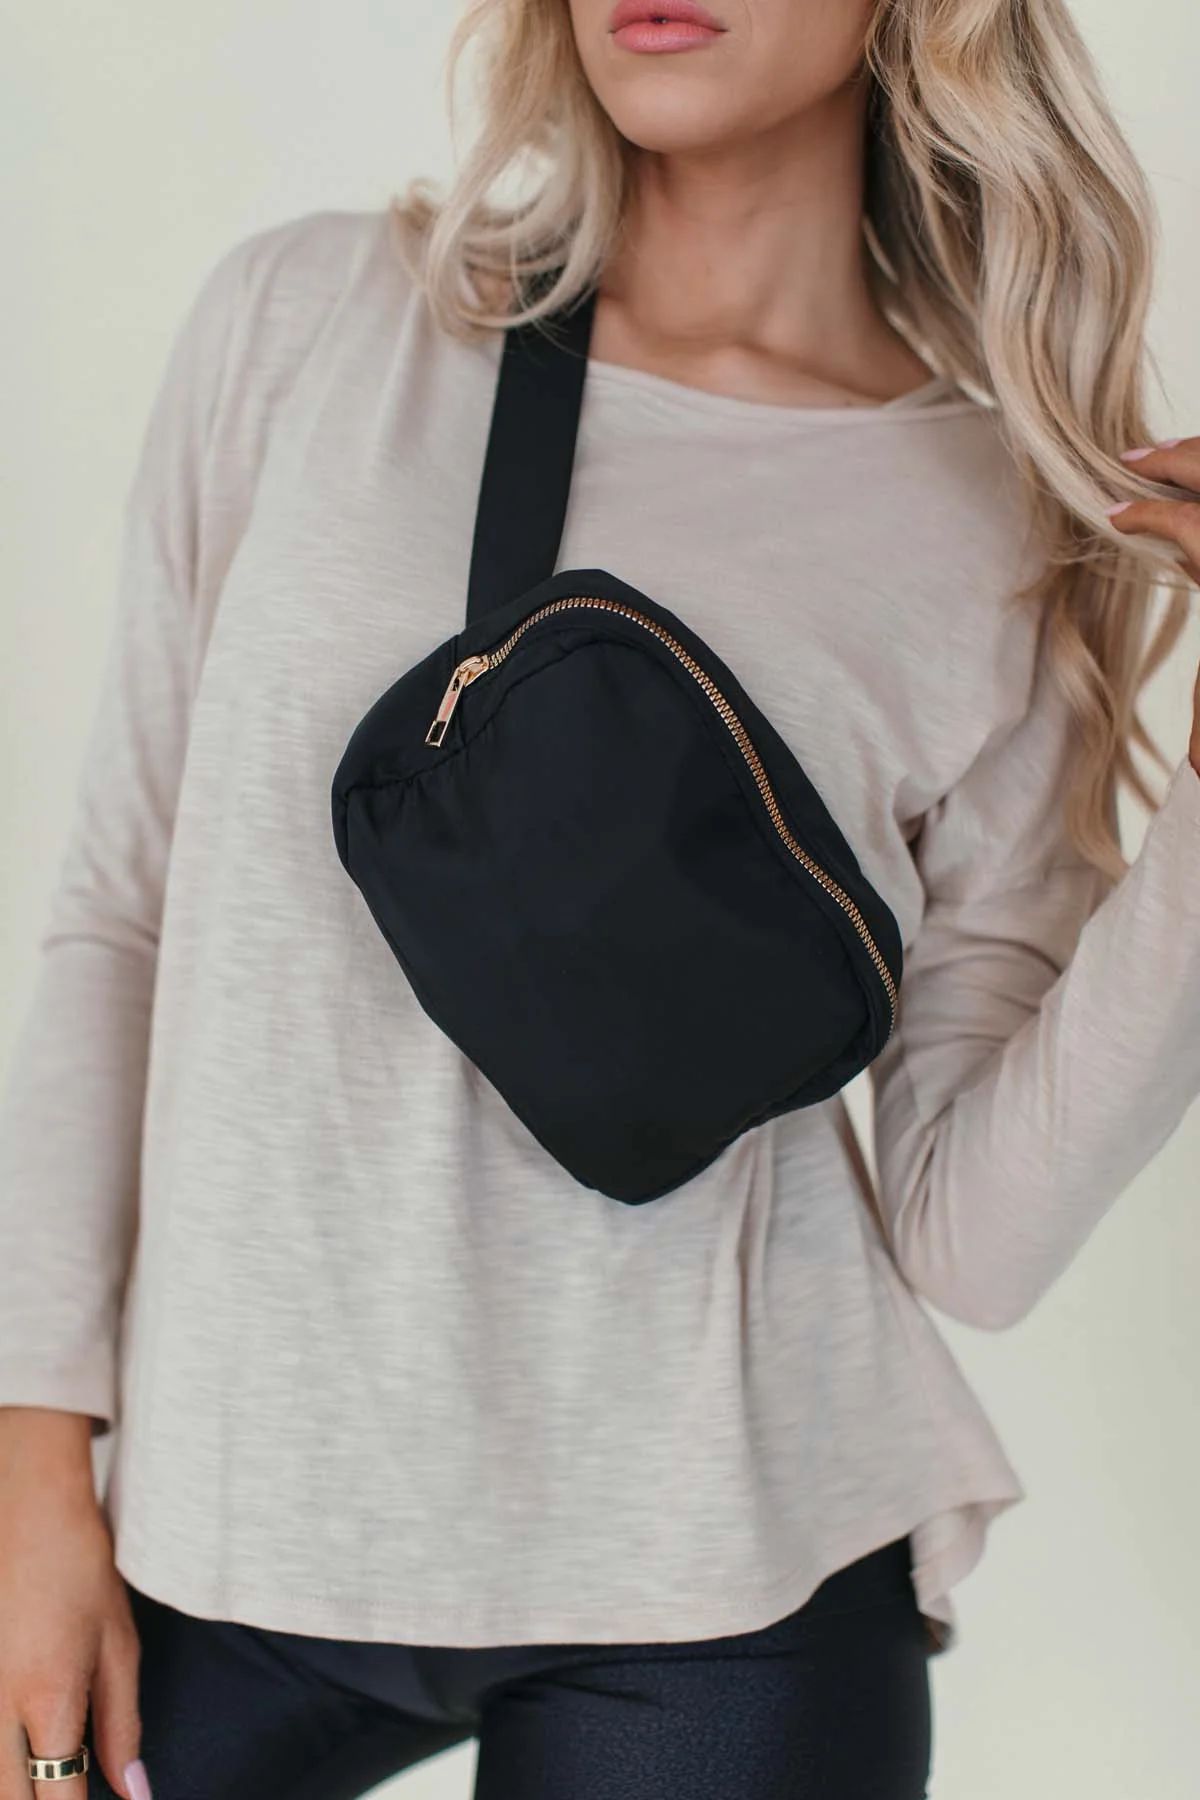 Adjustable Waist Belt Bag Black | The Post